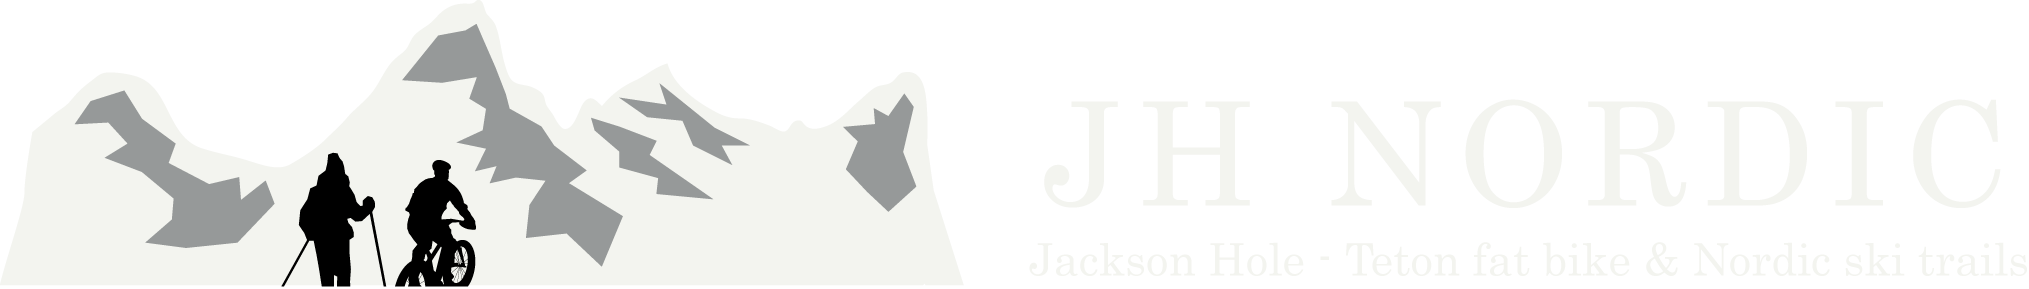 Jackson Hole Nordic